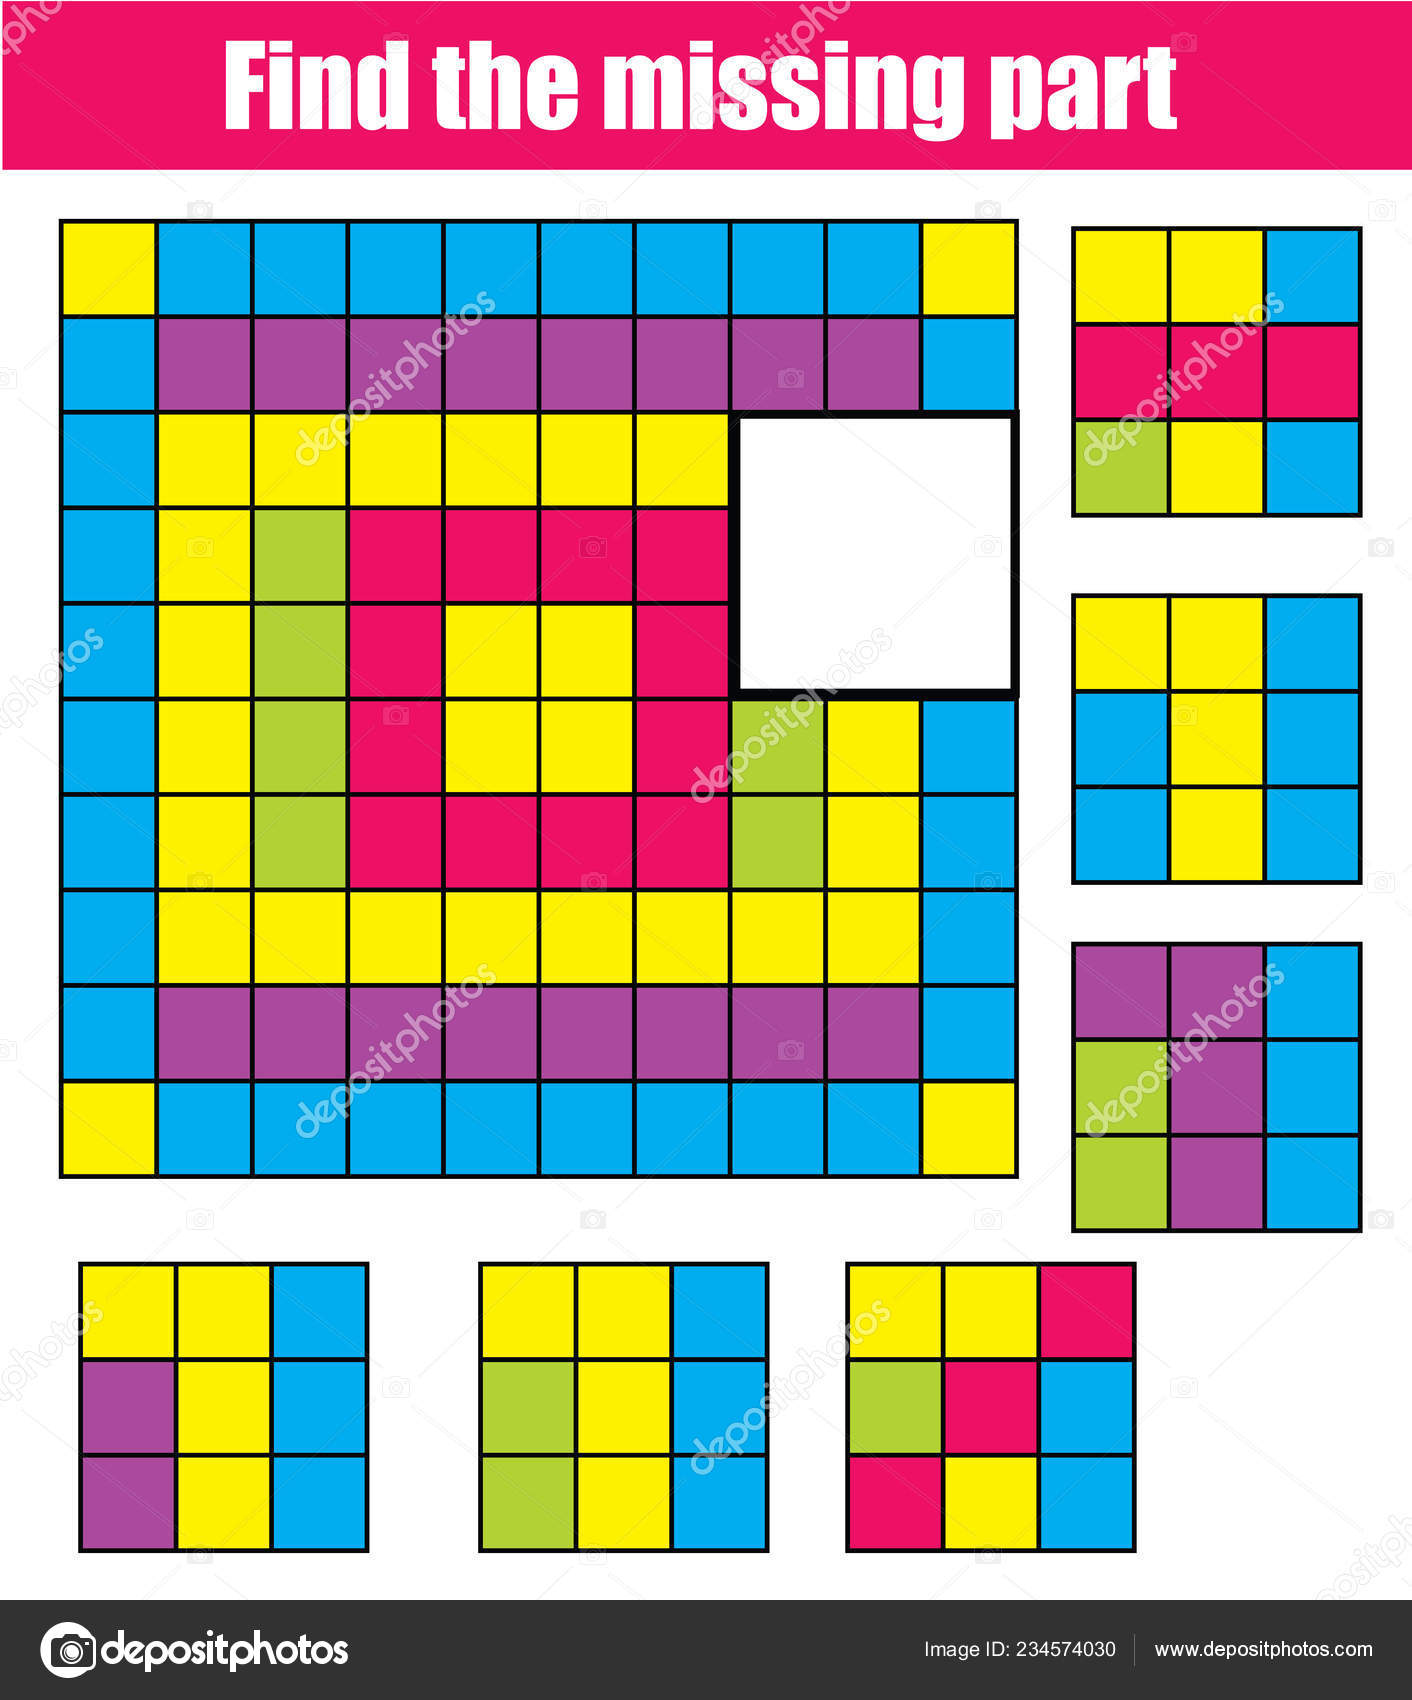 Peças do video game Tetris para colorir e imprimir